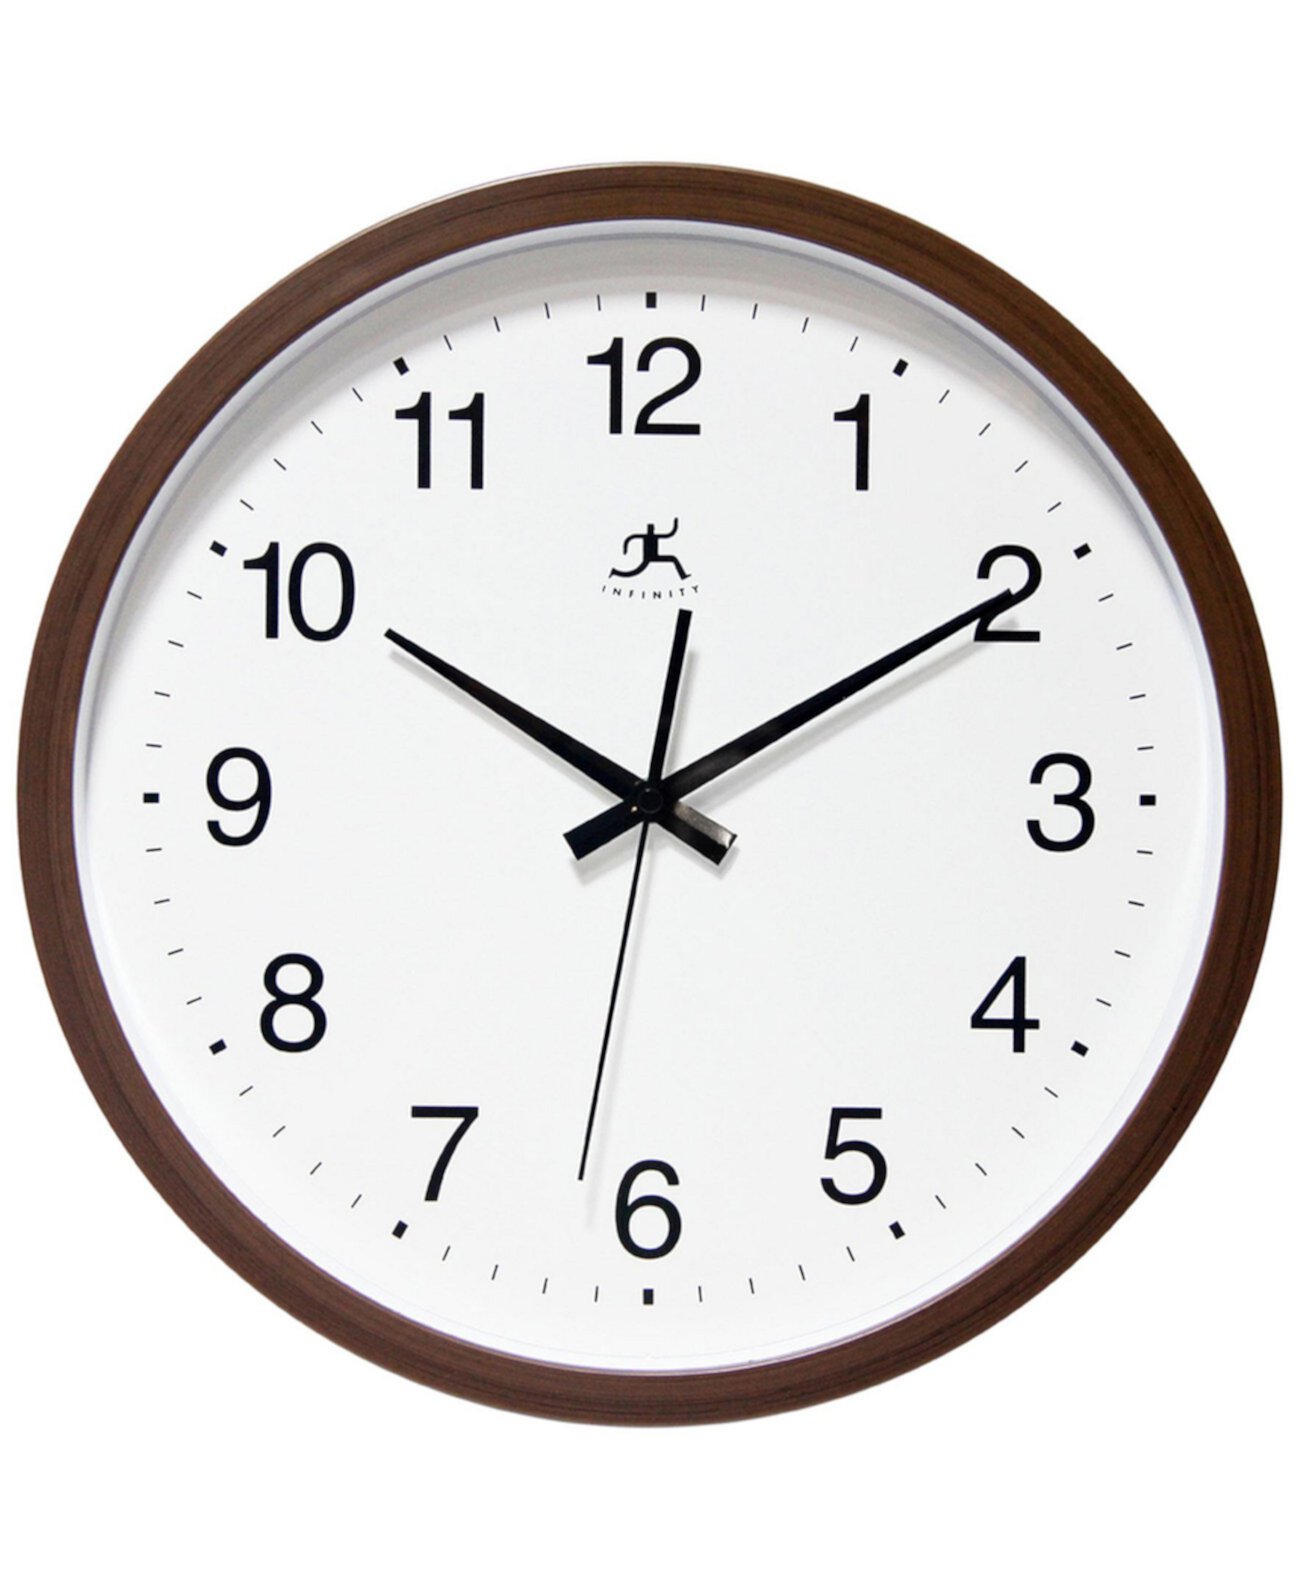 Часы 14 см. Часы круглые. Настенные часы бесконечность. Часы 14:15. Часы in14.